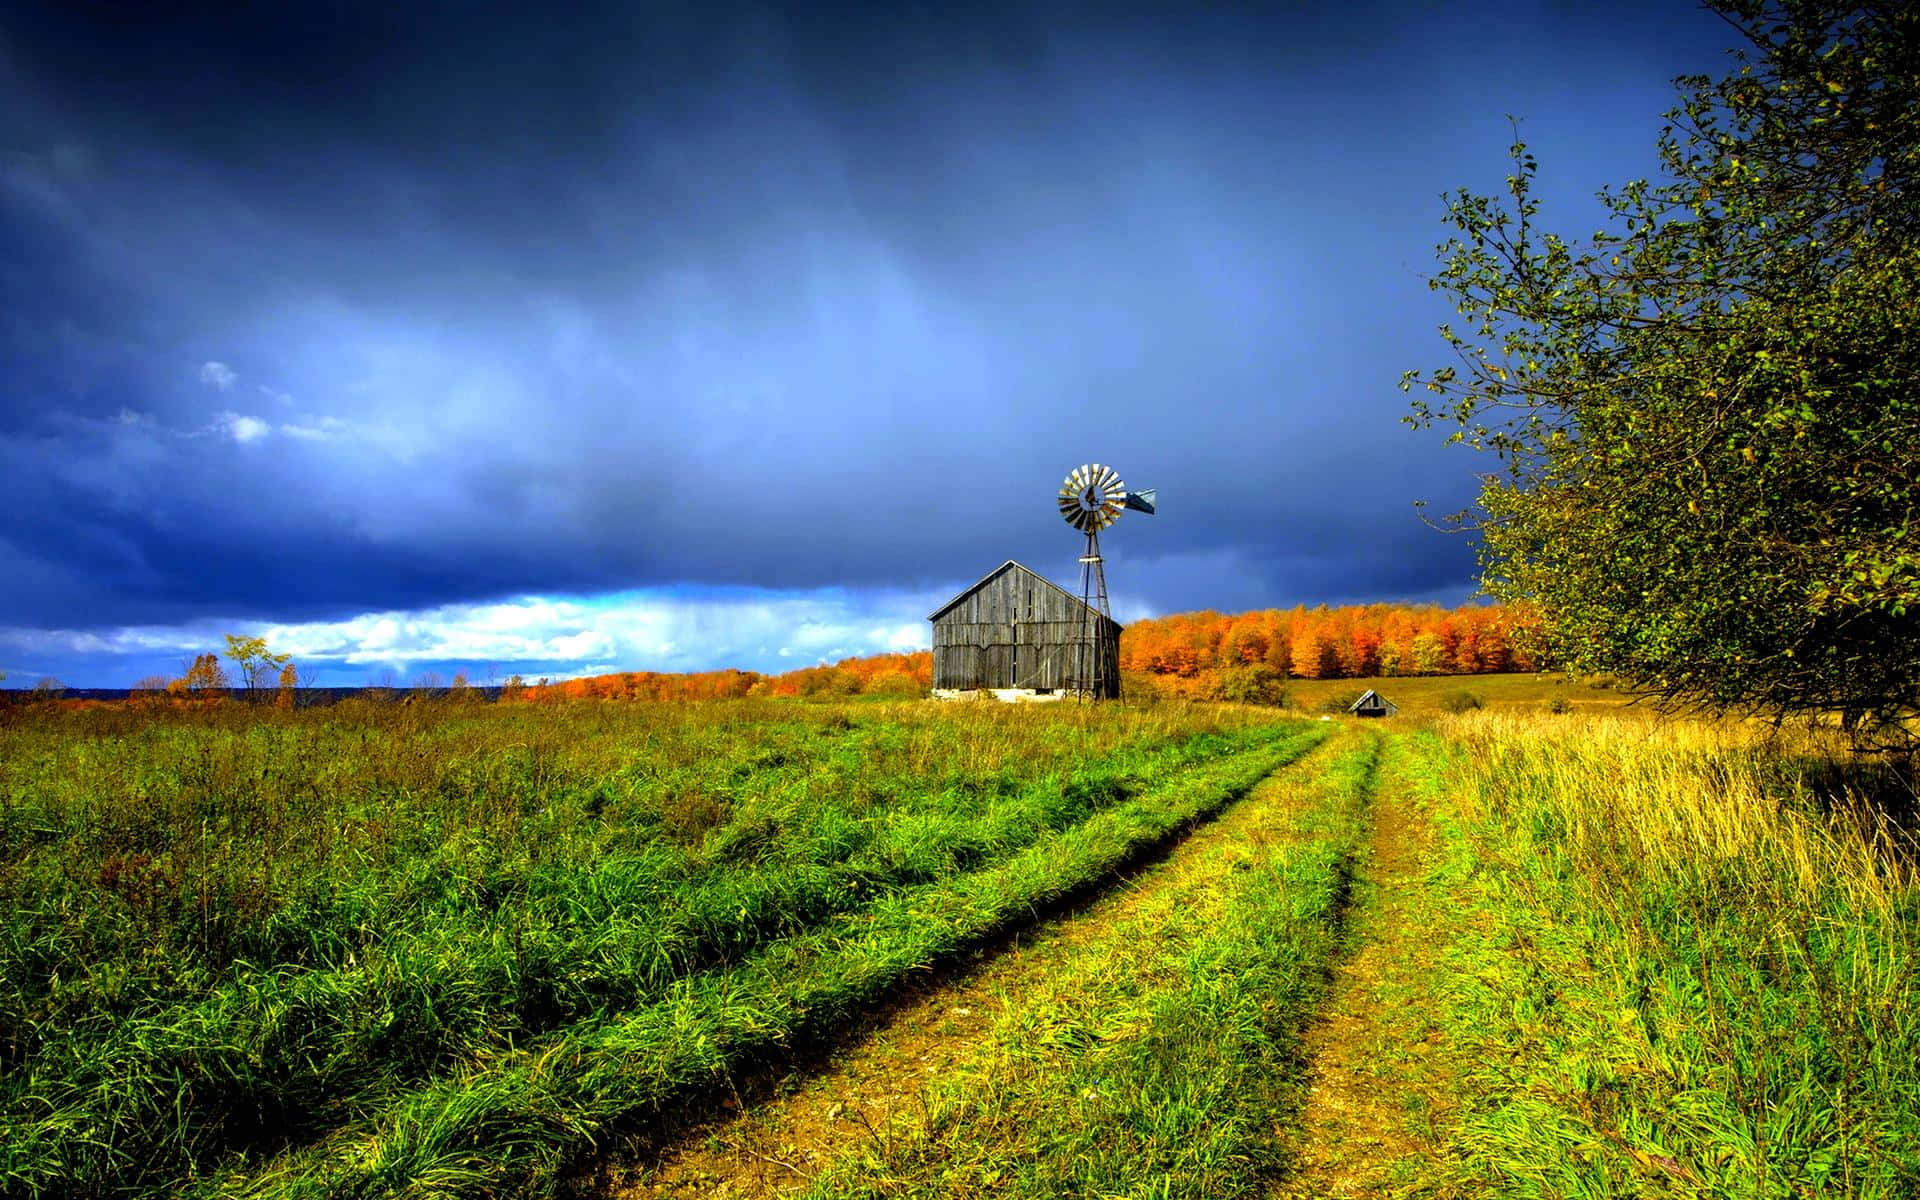 An idyllic barn in rural America